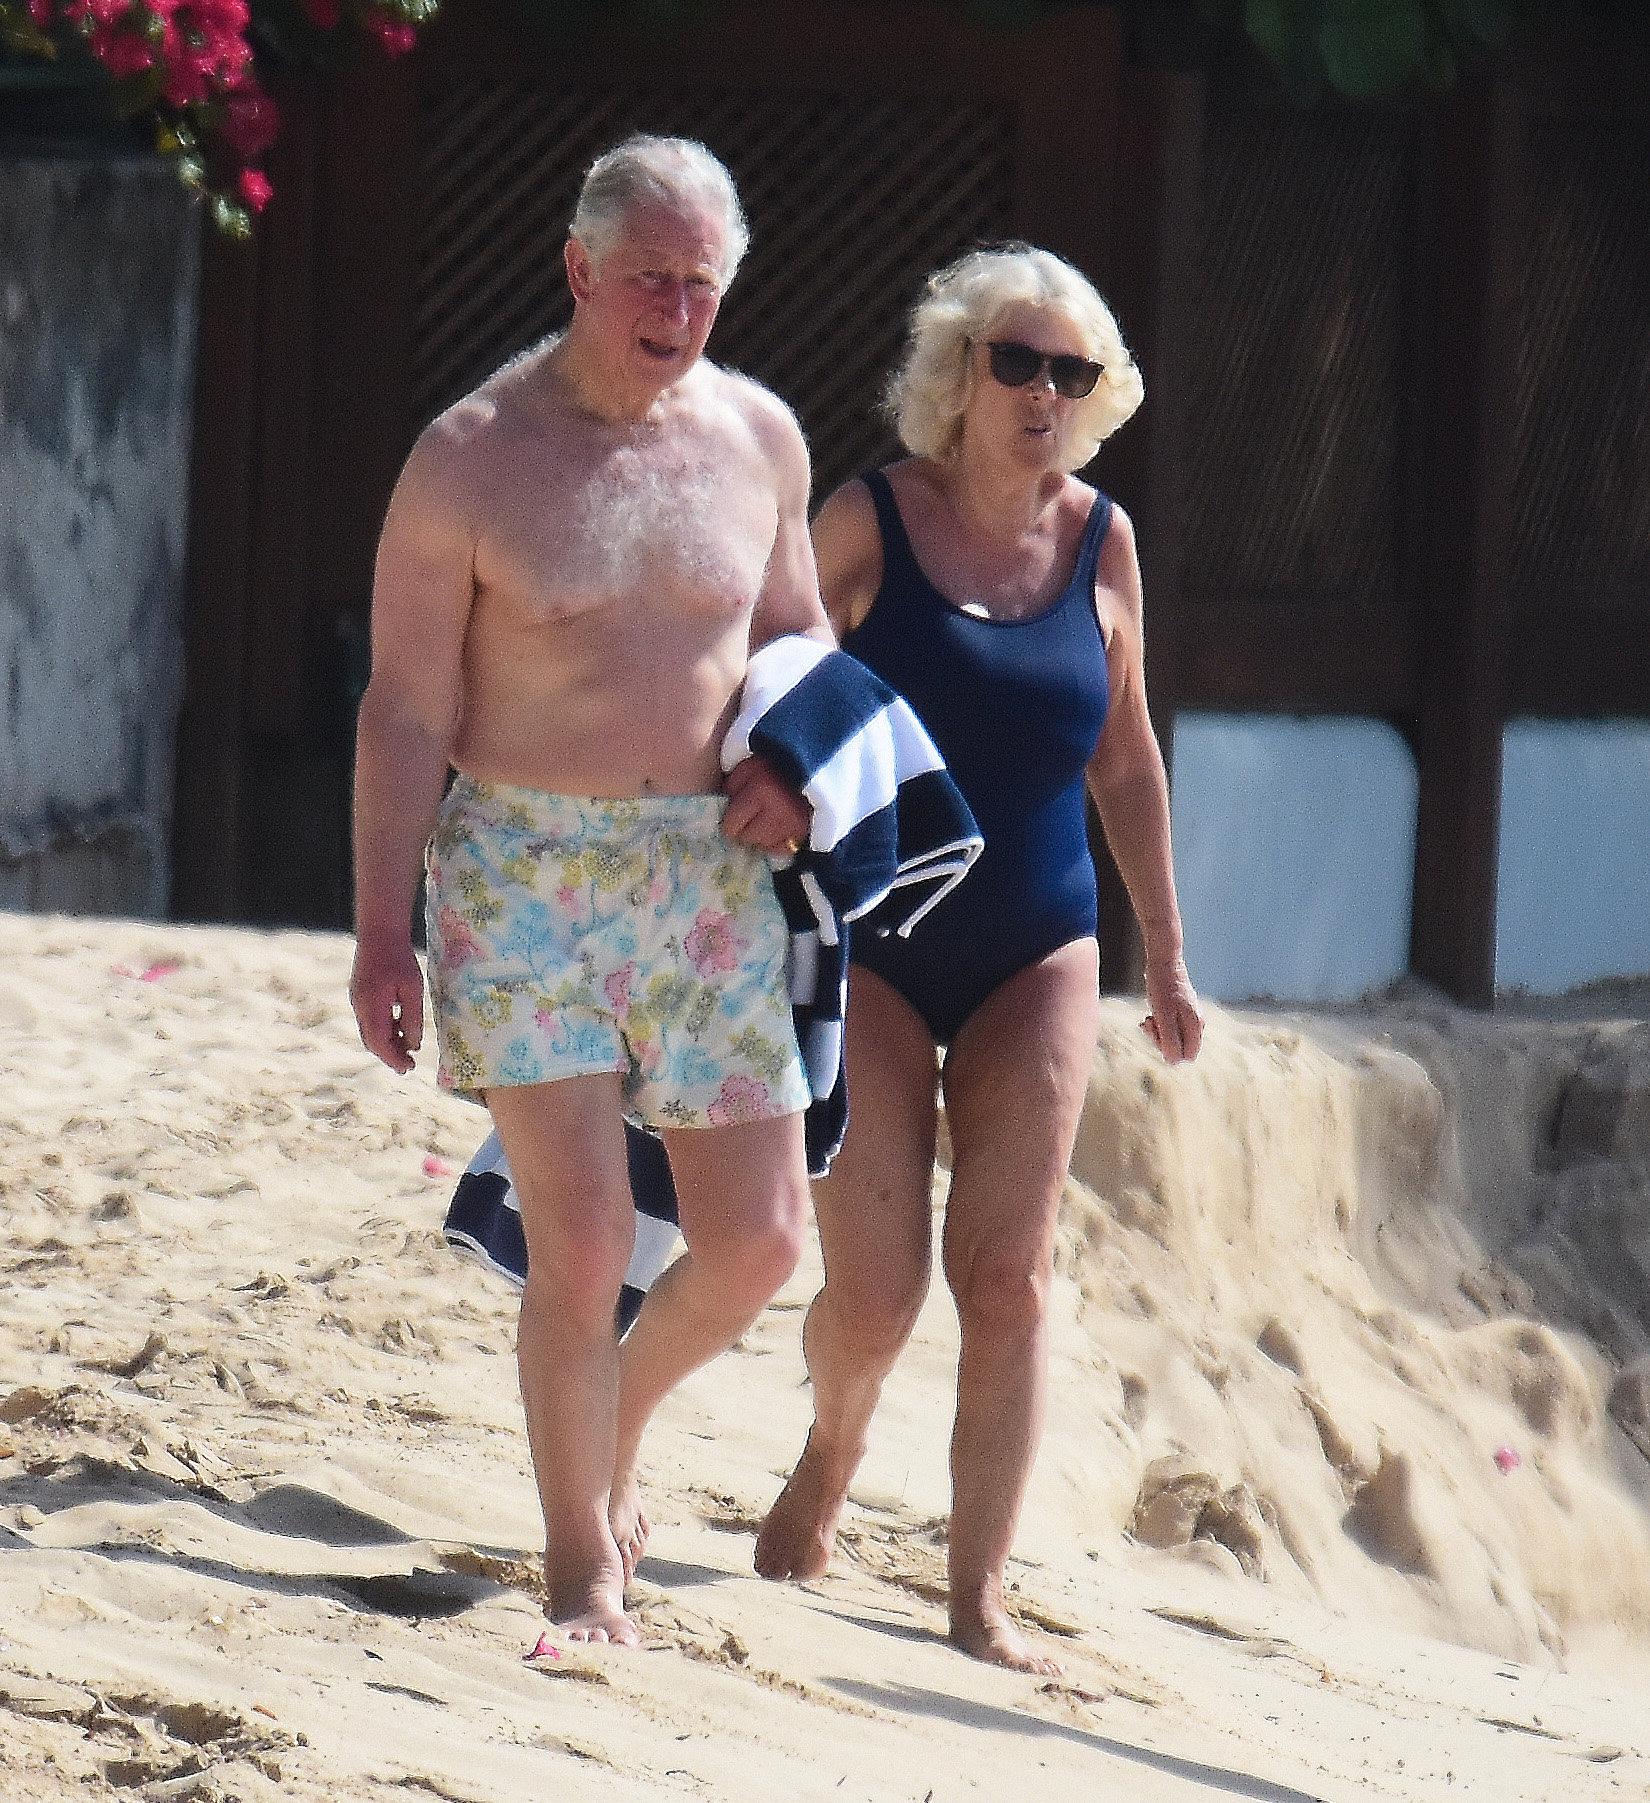 I dagarna besökte paret ön Barbados. På bilderna från stranden syns den 70-åriga prinsens  vältrimmade kropp.